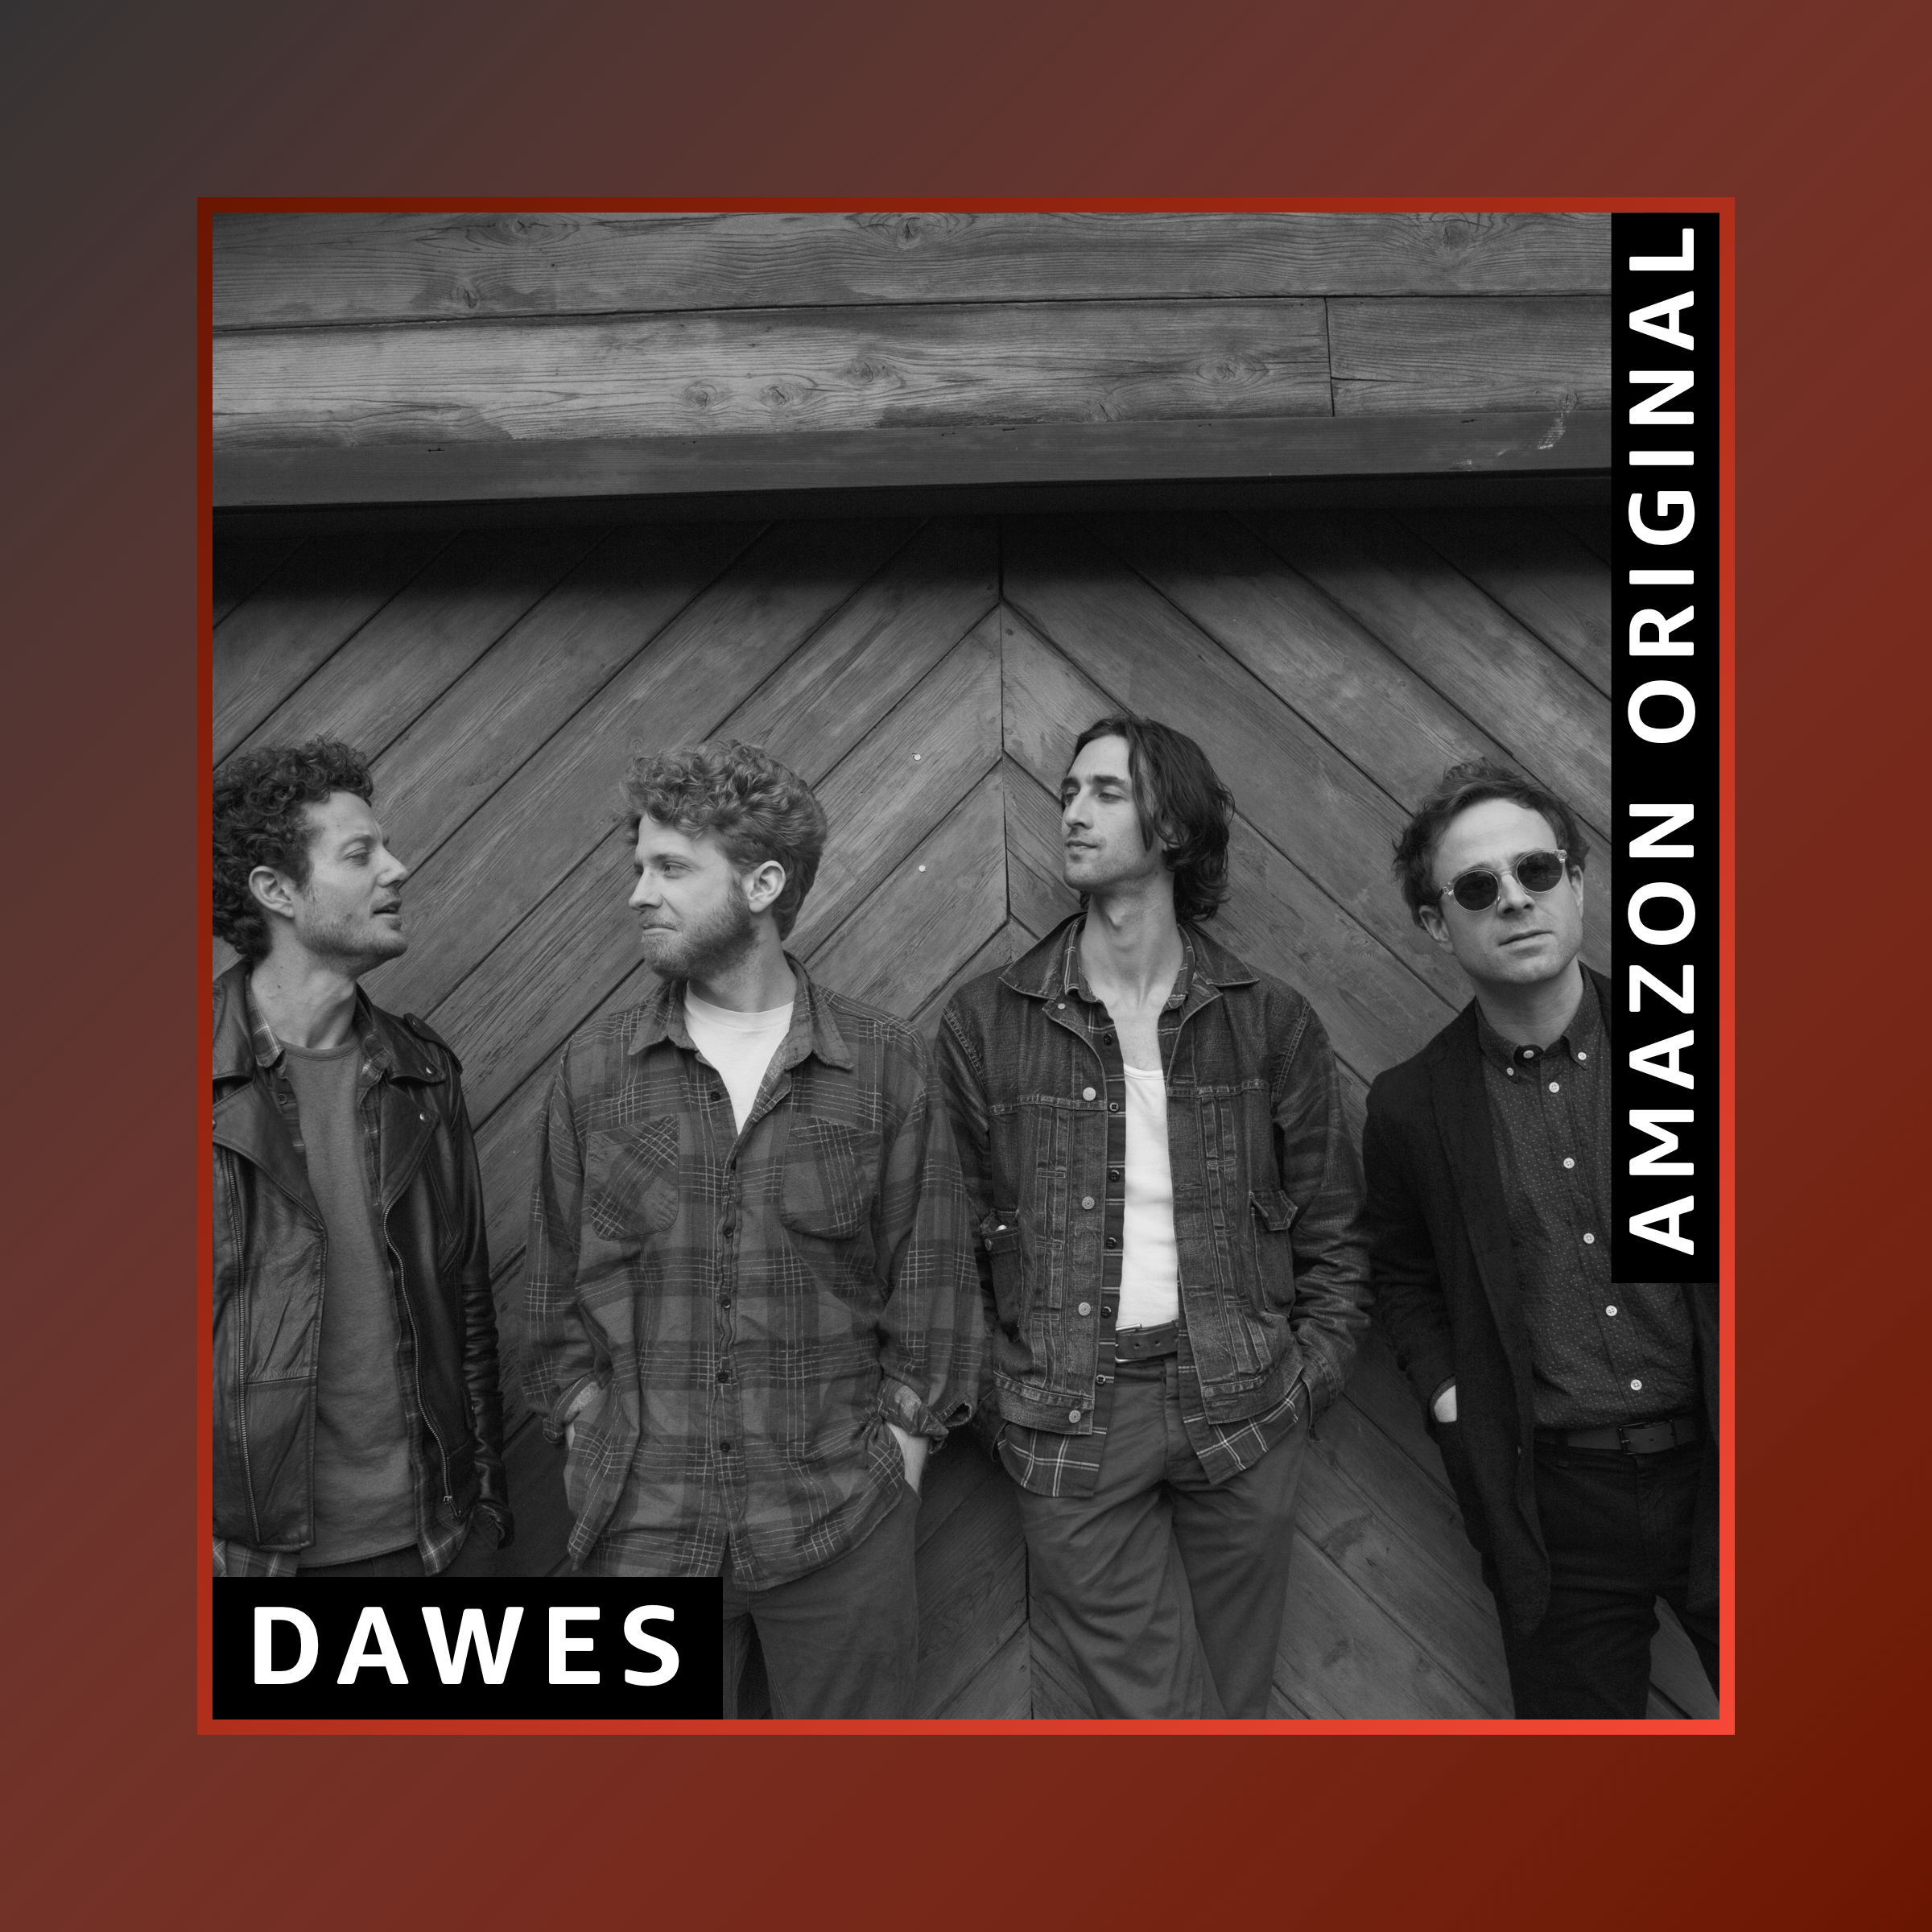 Dawes’ Alternate Version of “All Your Favorite Bands”